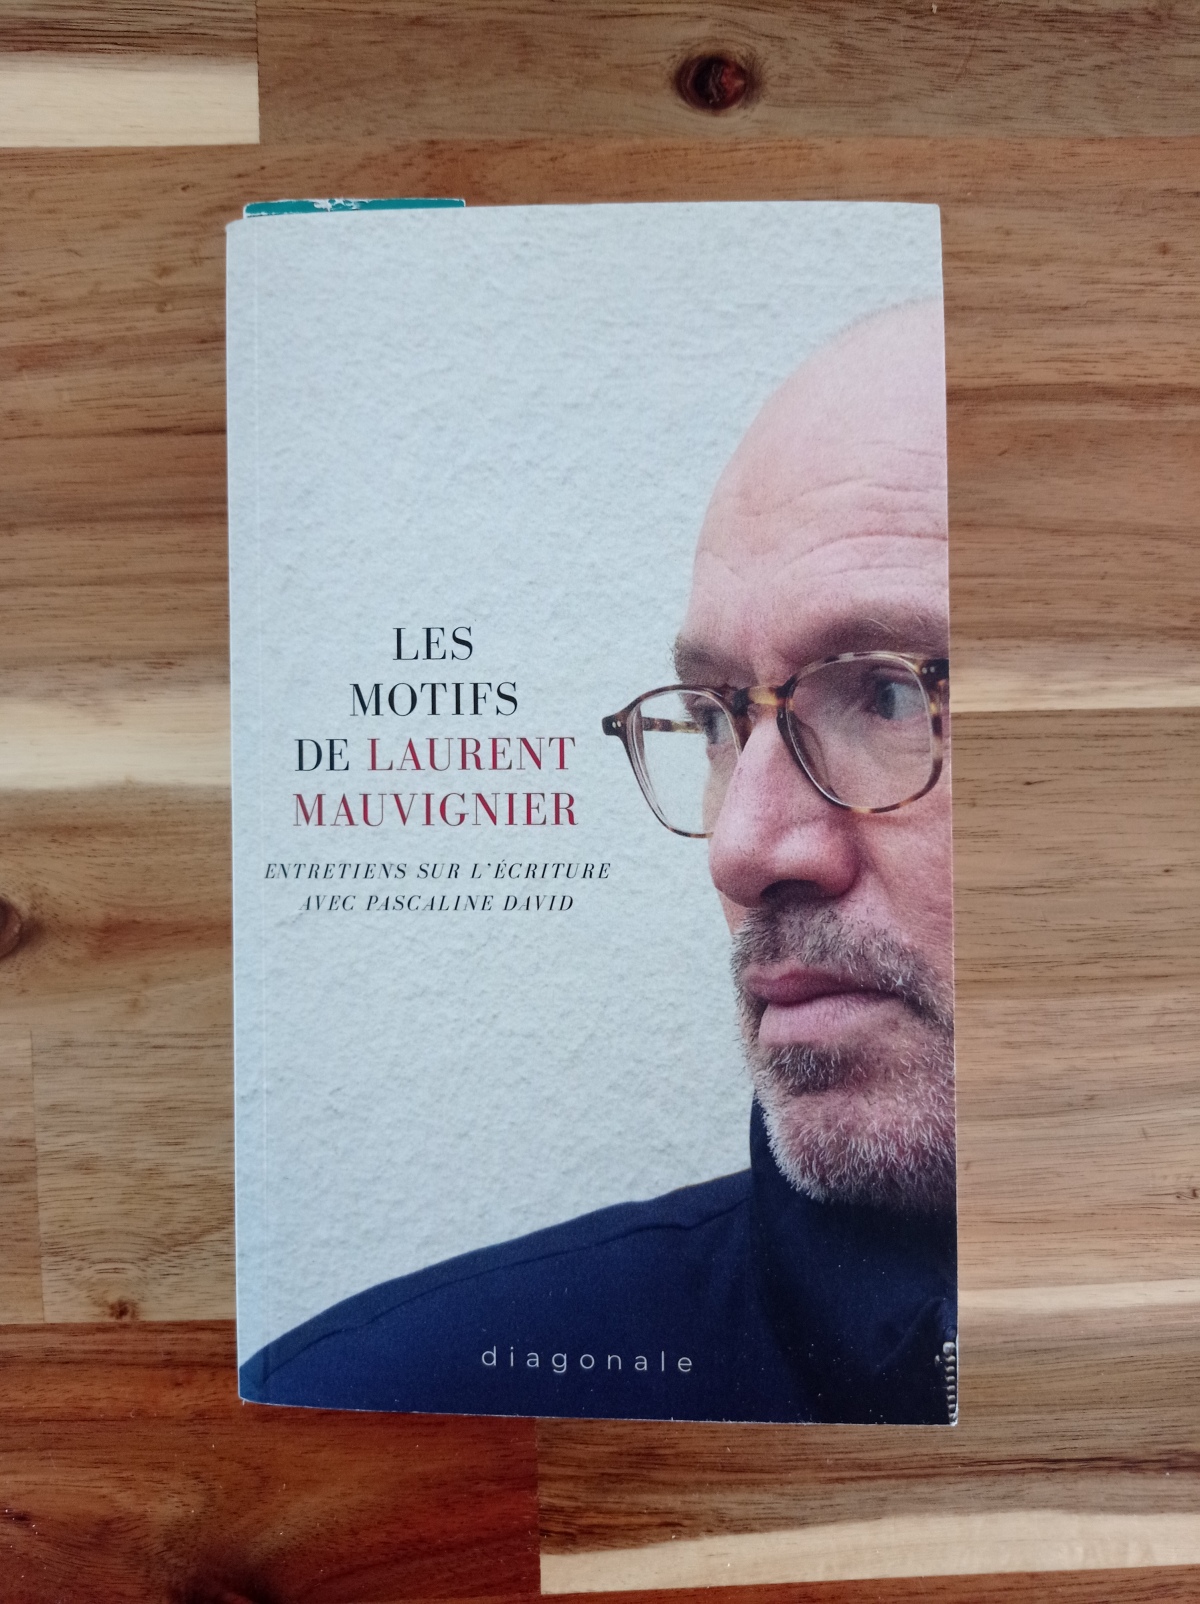 Les motifs / Laurent Mauvignier